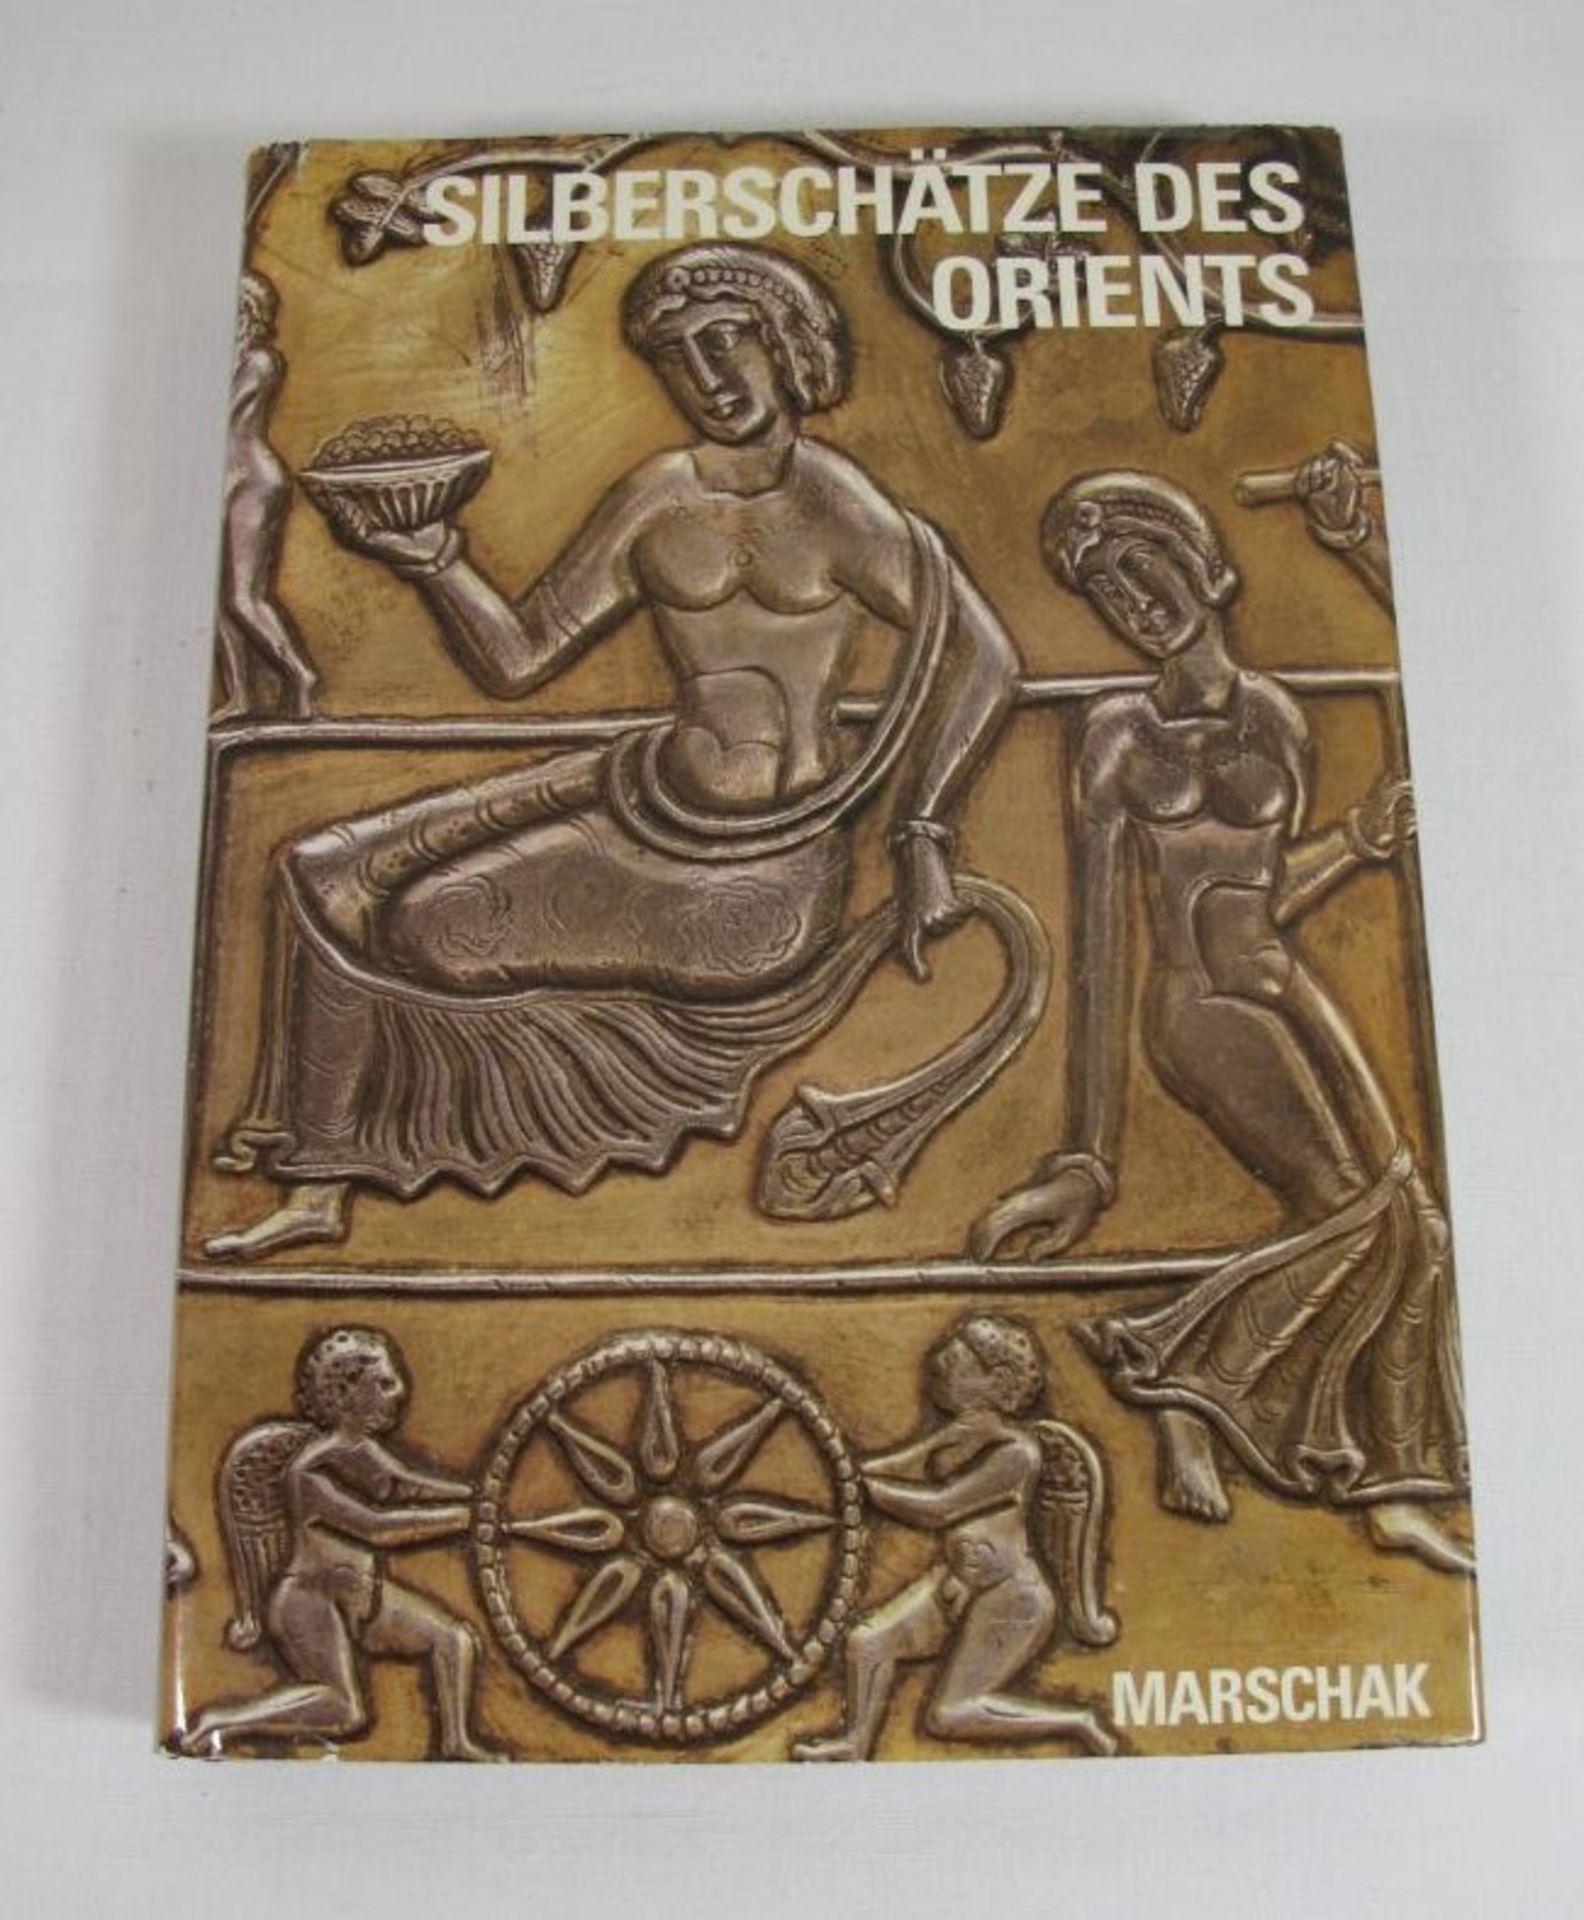 Silberschätze des Orients, Boris Marschak, 1986.